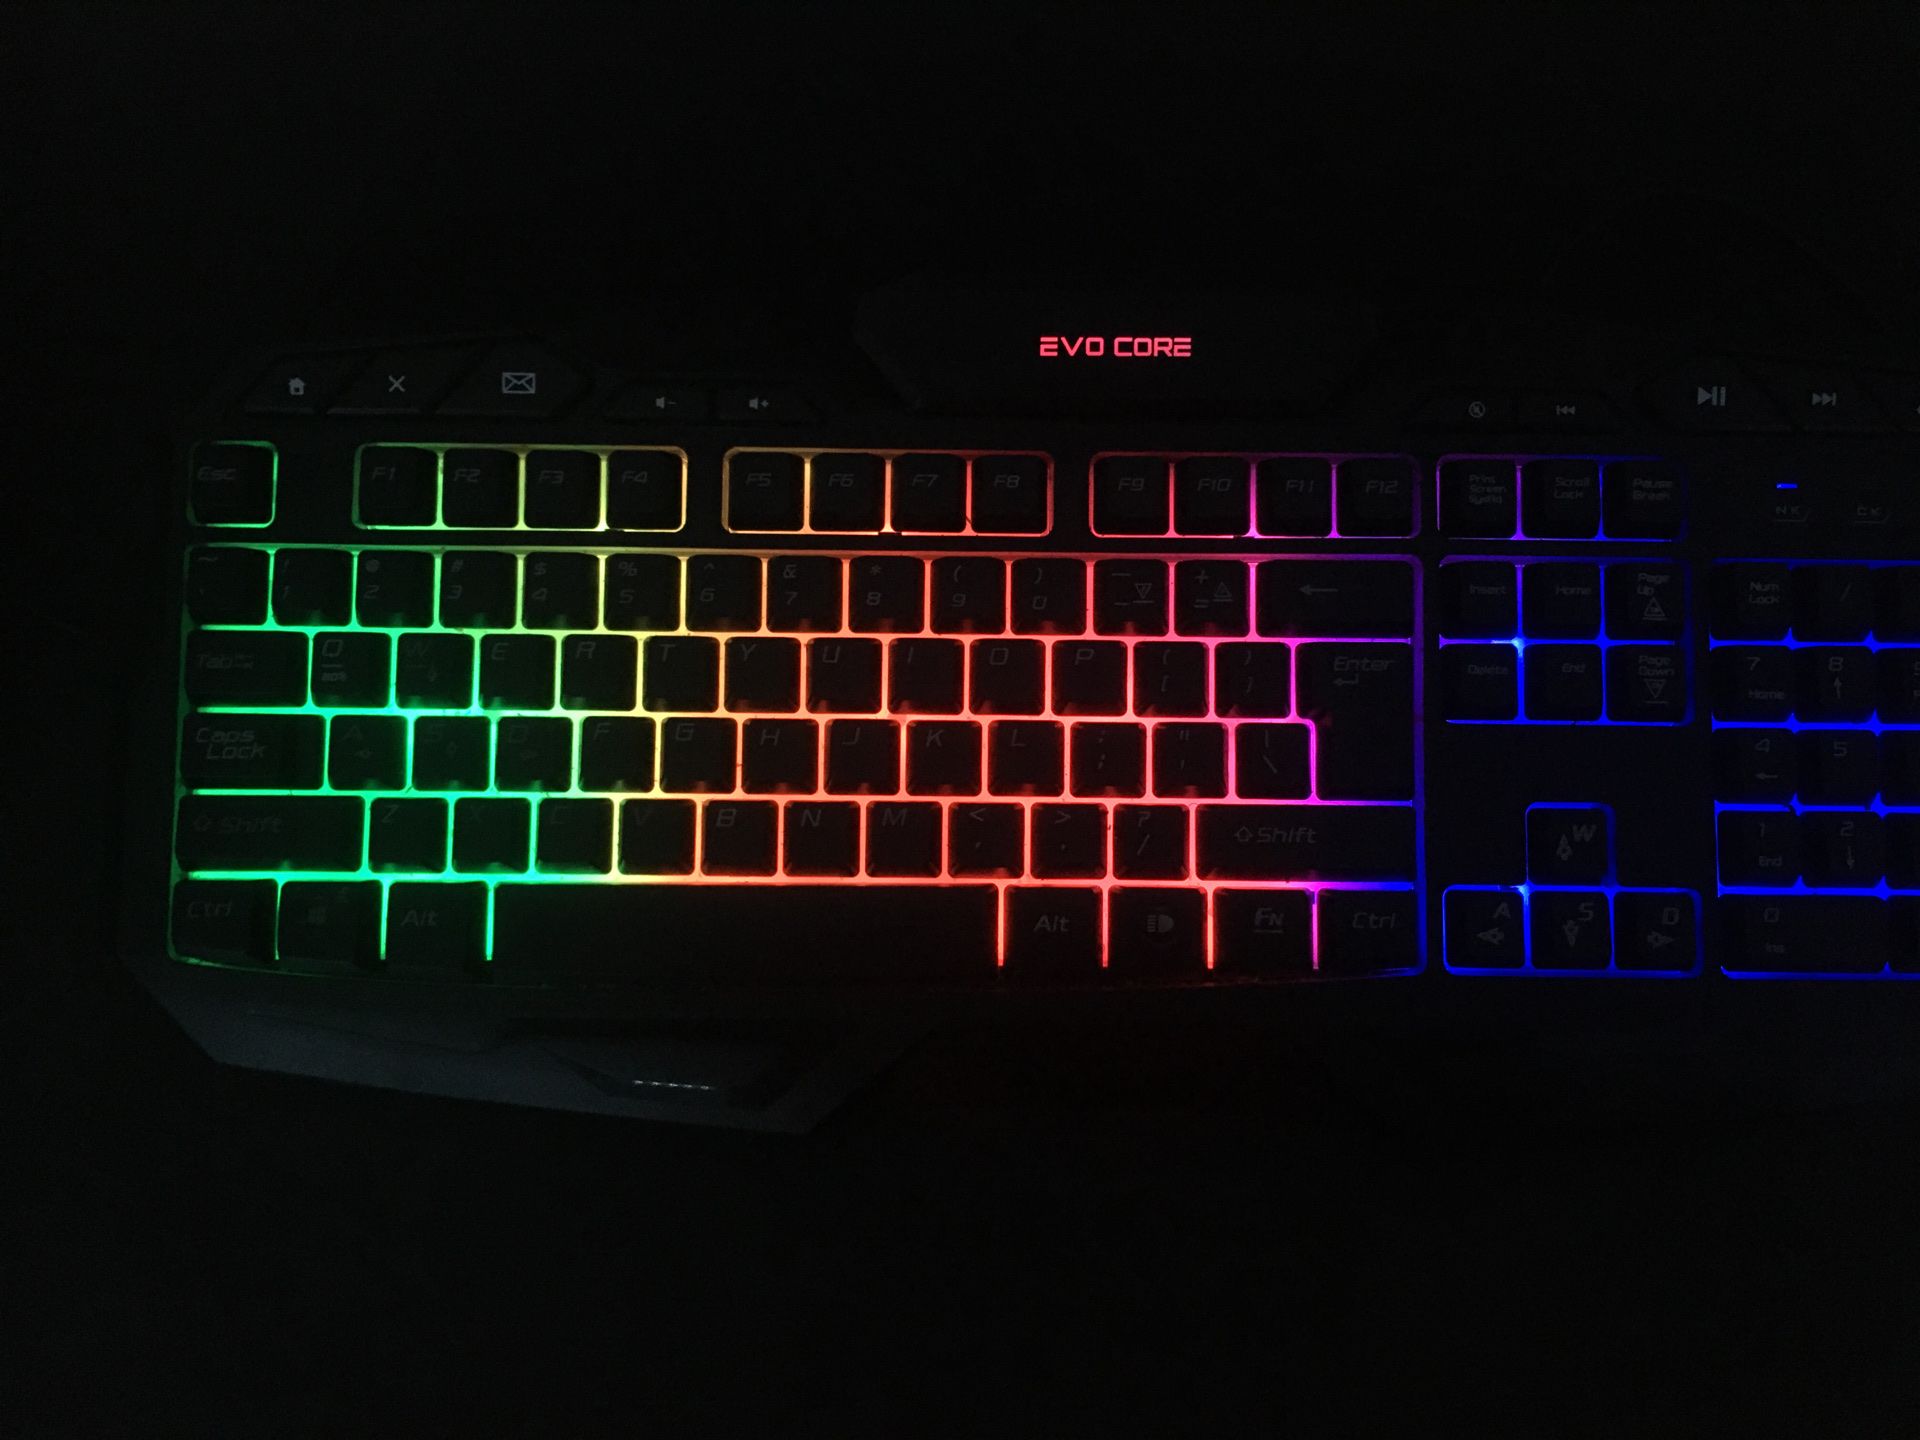 Evo core keyboard, 100%, LED